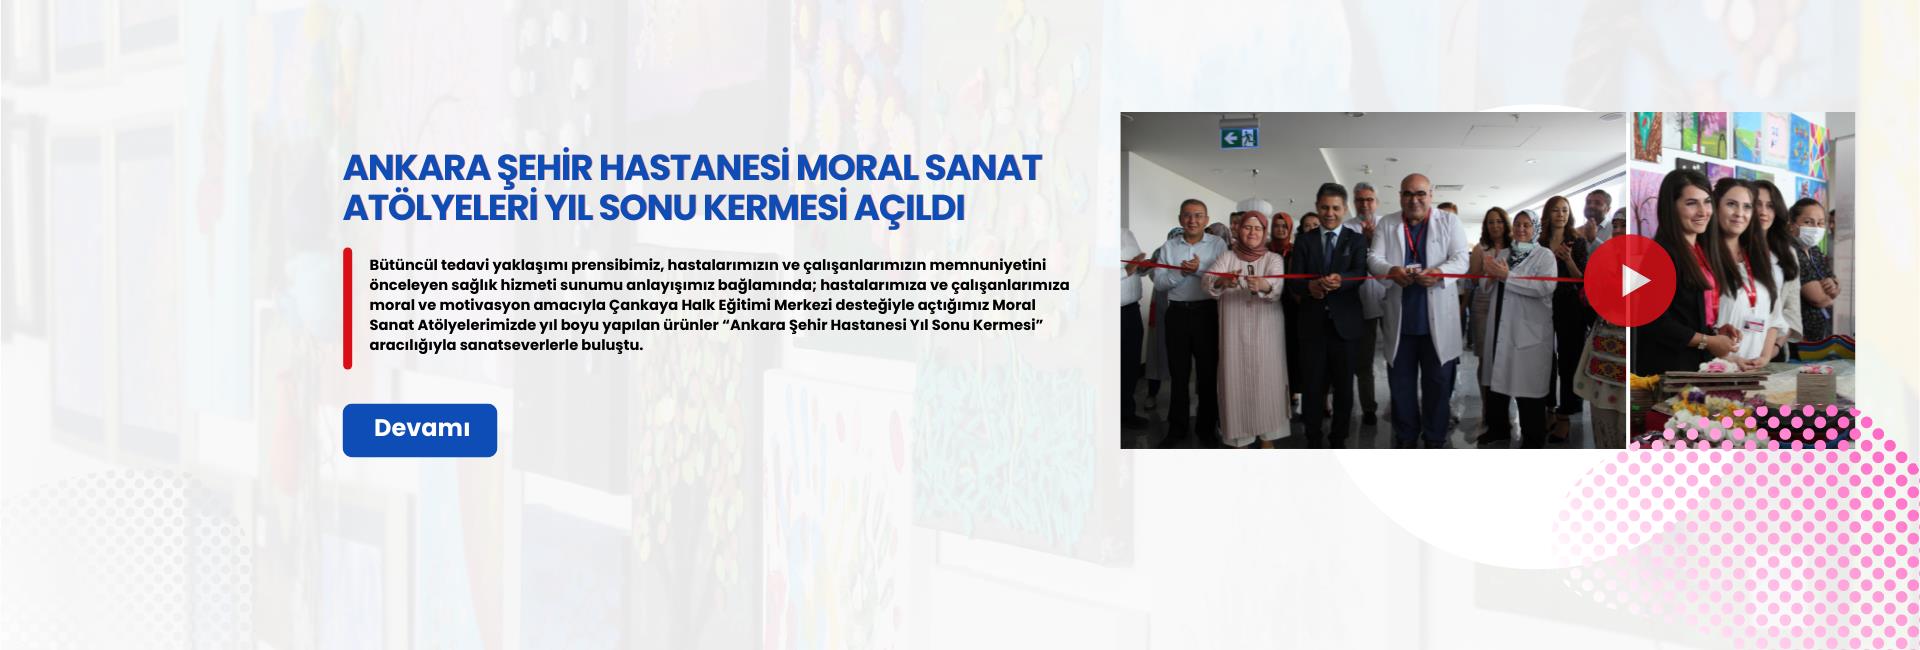 Ankara Şehir Hastanemiz Moral Sanat Atölyeleri Yıl Sonu Kermesi Açıldı